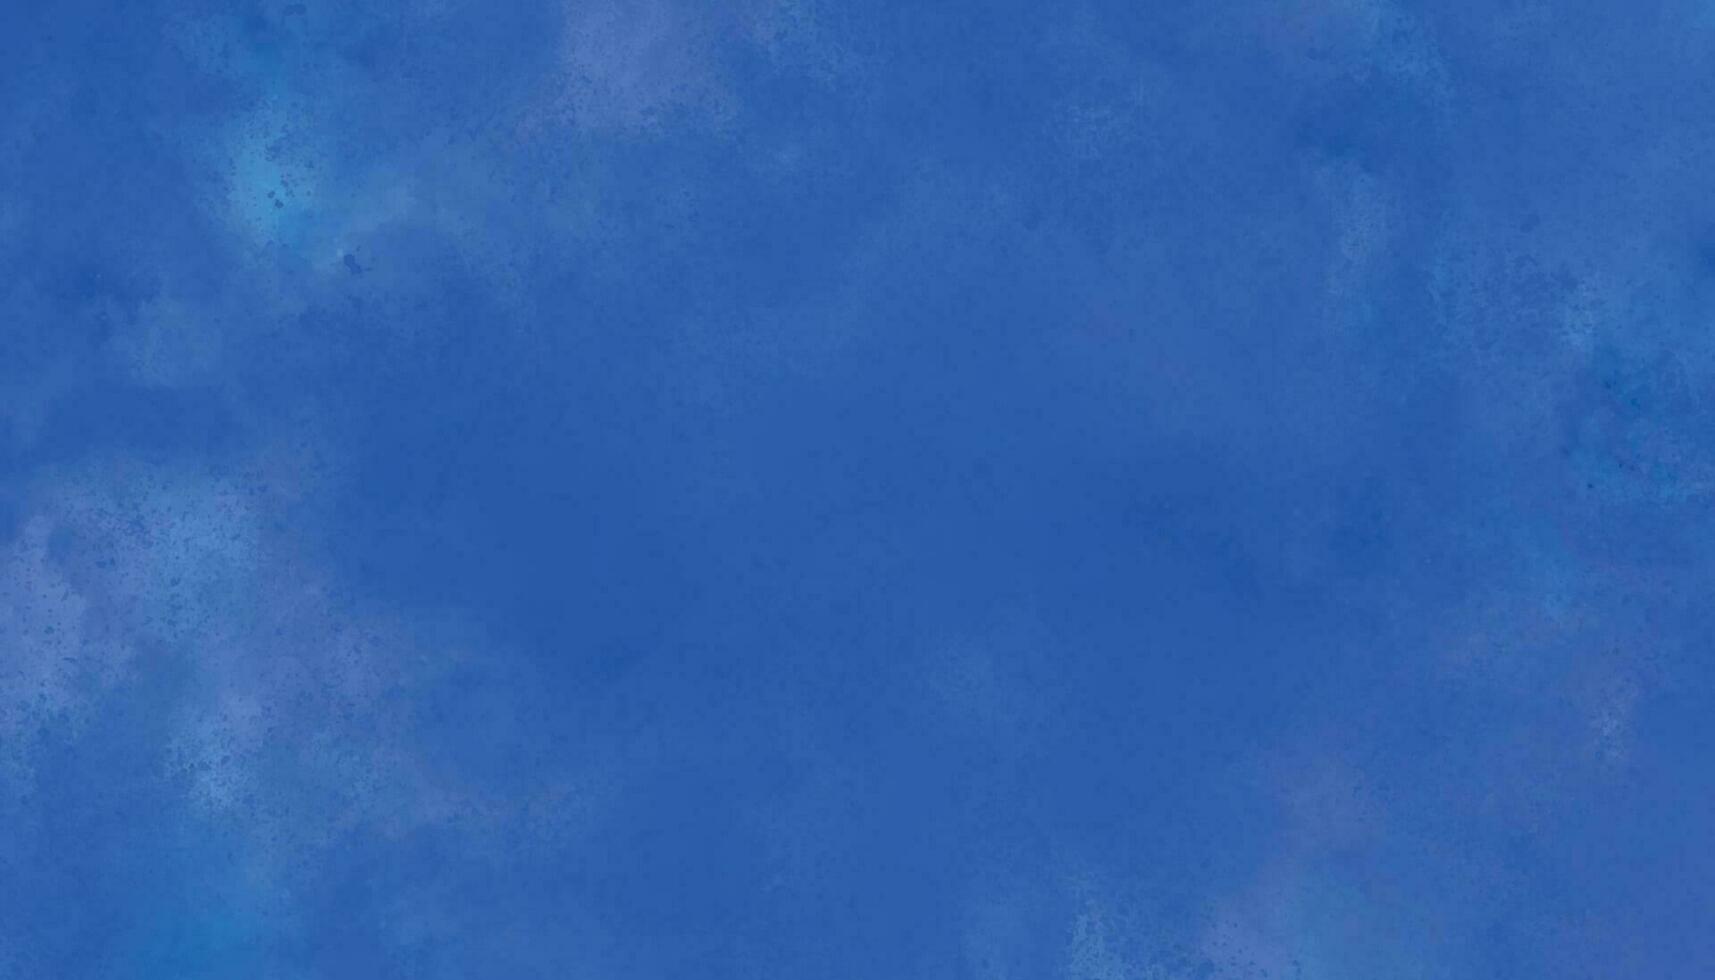 azul aguarela fundo. azul céu com nuvens. abstrato nublado azul céu fundo digital pintura vetor